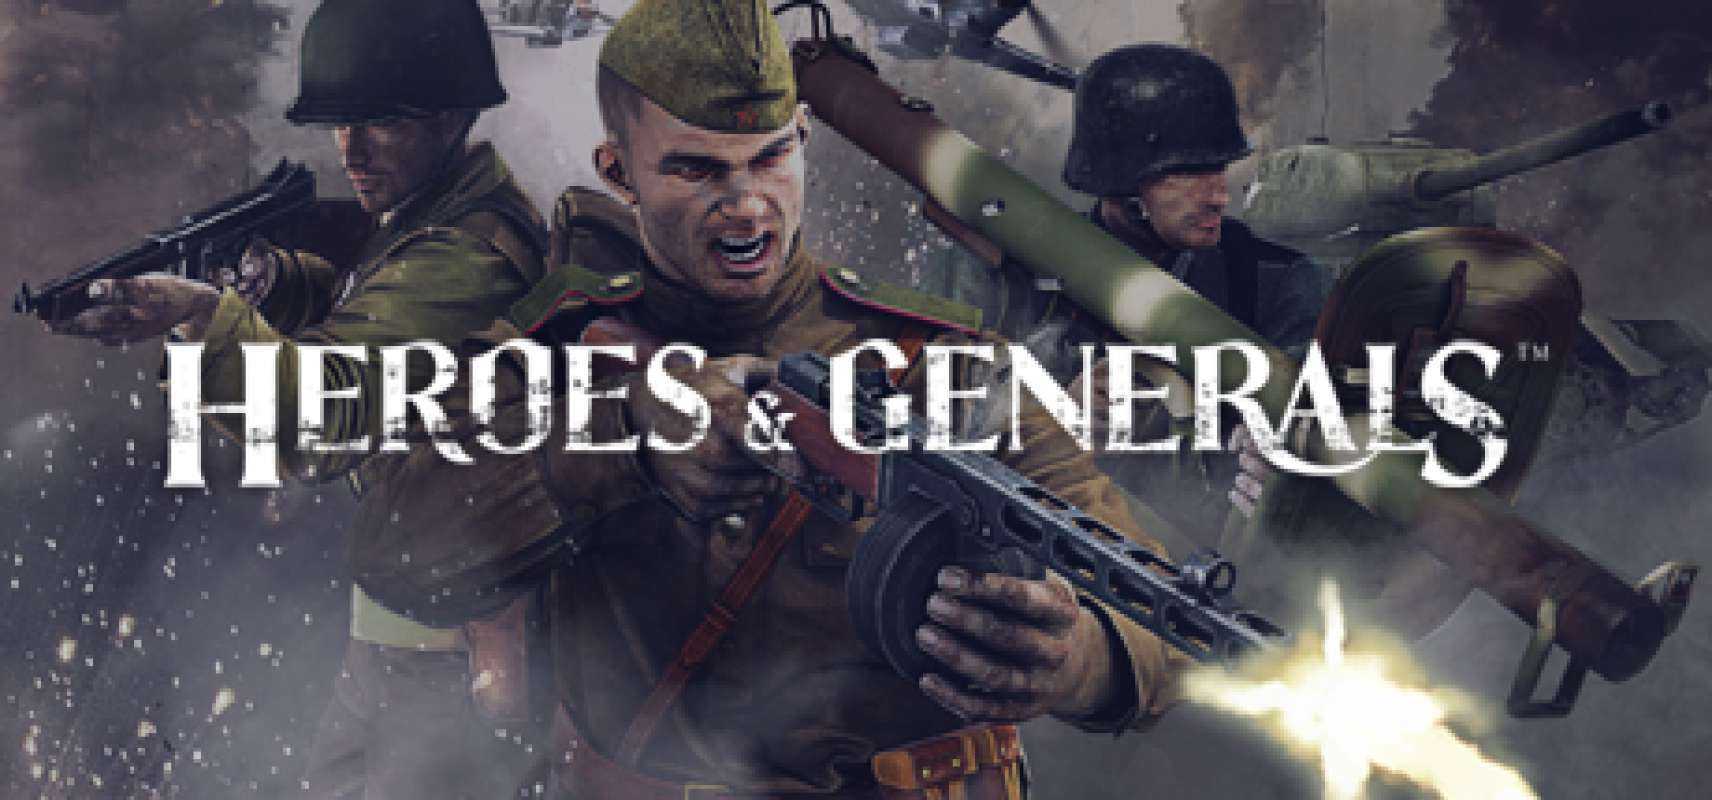 Heroes & Generals WWII